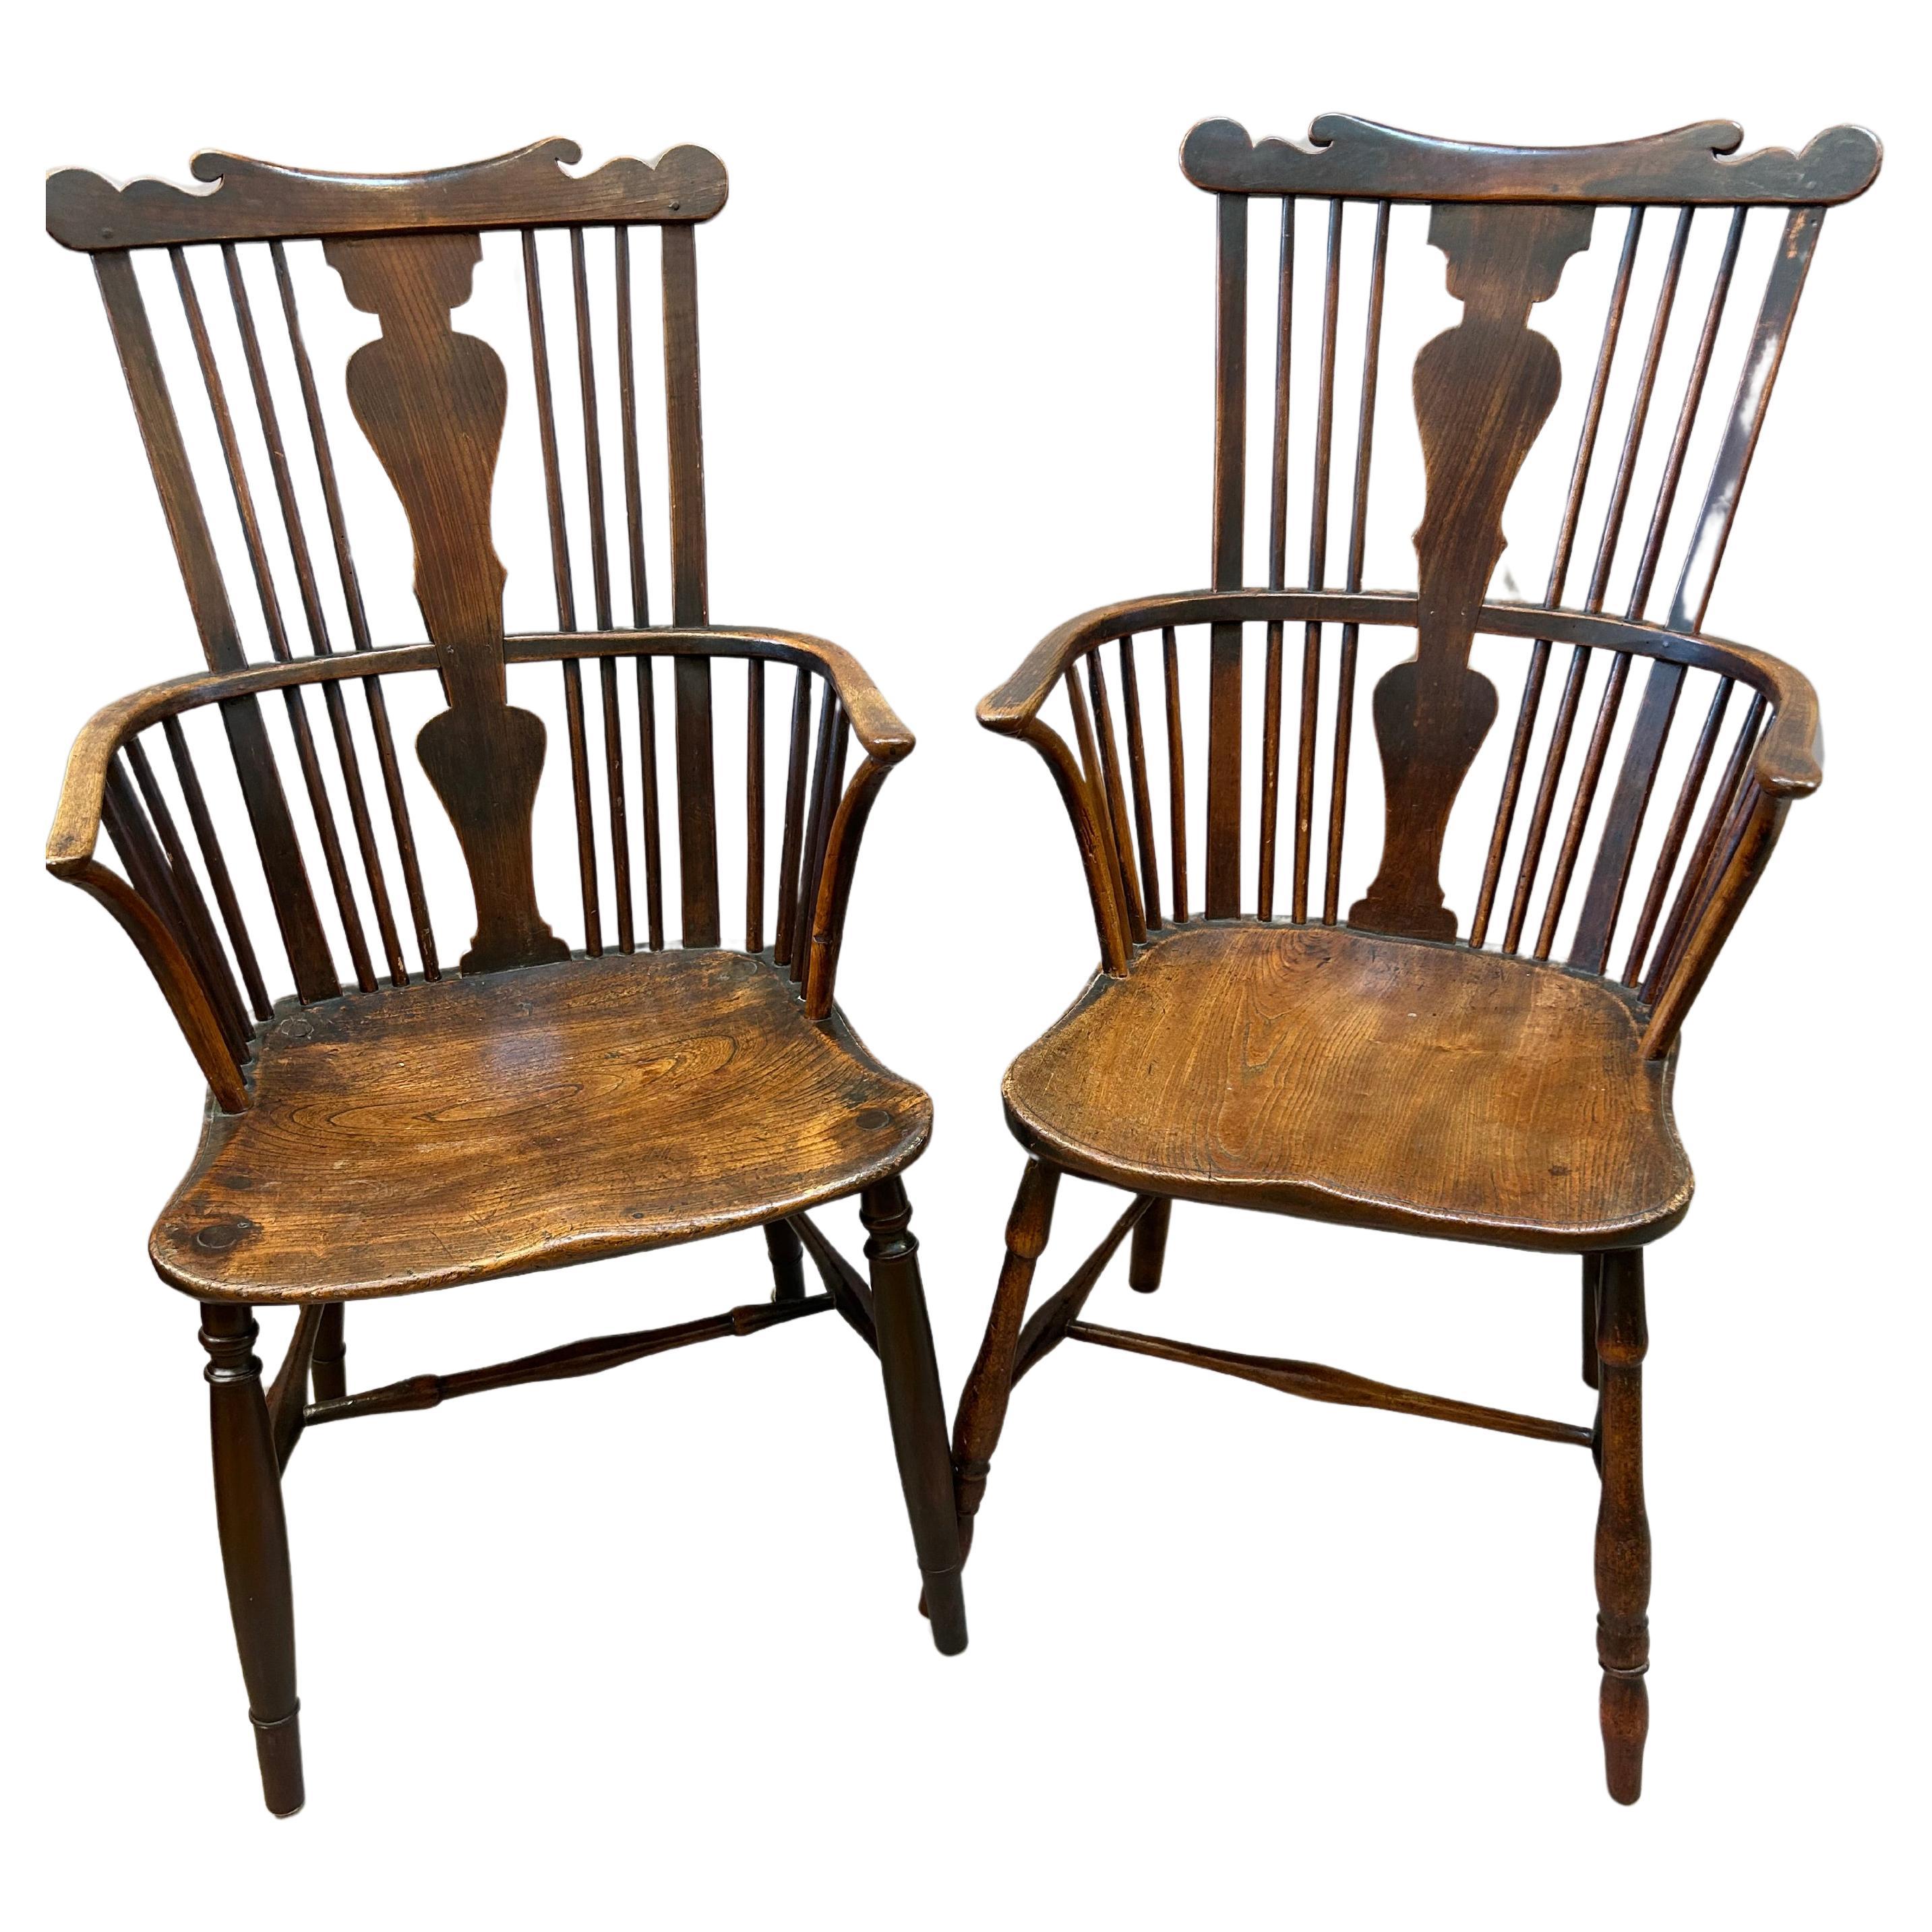 Zwei englische Windsor-Sessel mit Kammrücken aus dem 18. Jahrhundert.